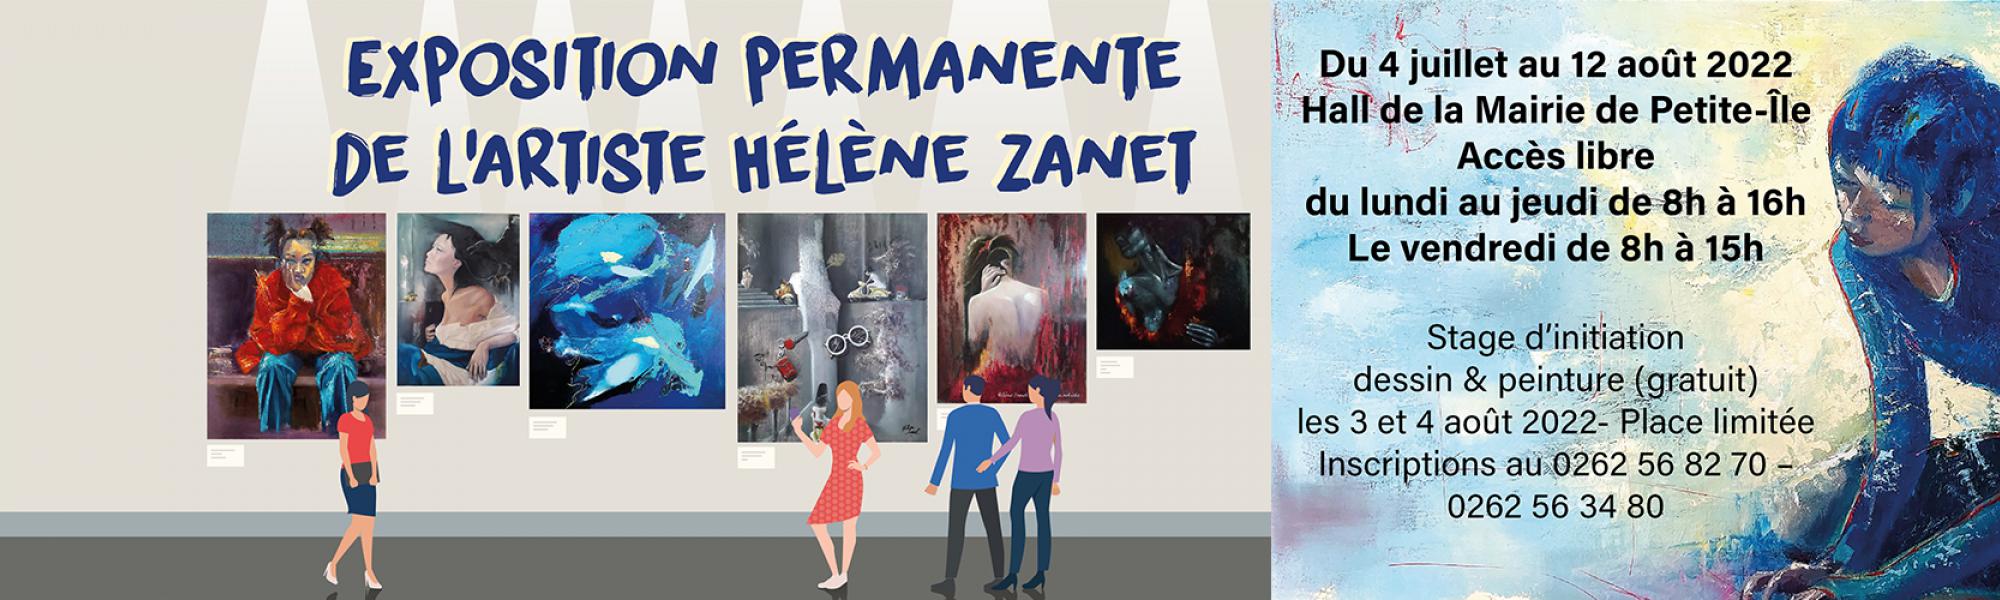 Exposition permanente  de l’artiste Hélène Zanet